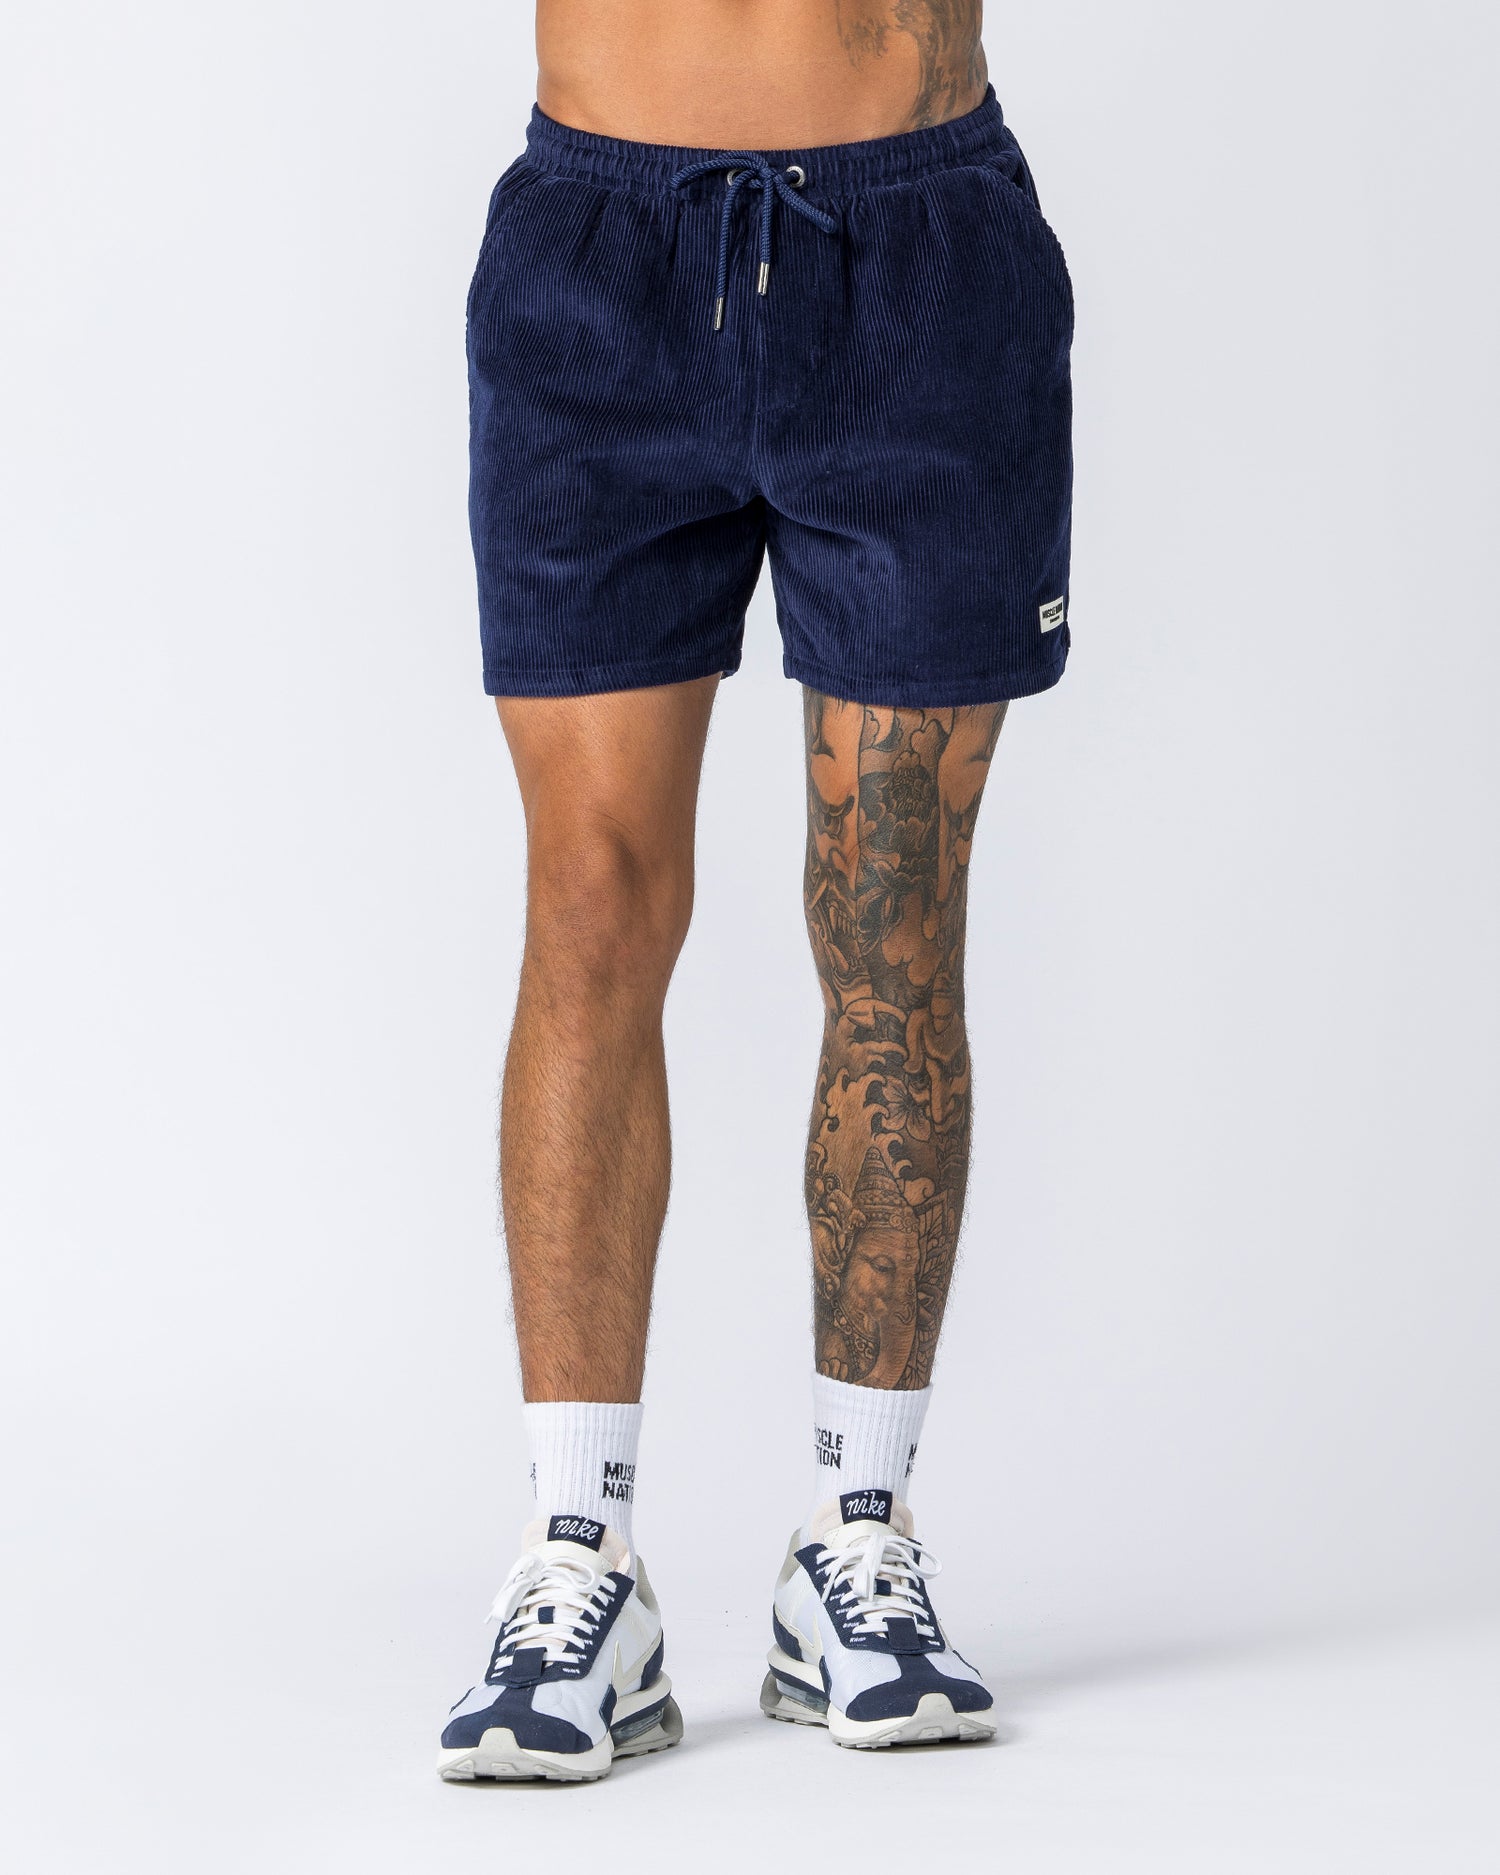 Daily Corduroy Shorts - Navy